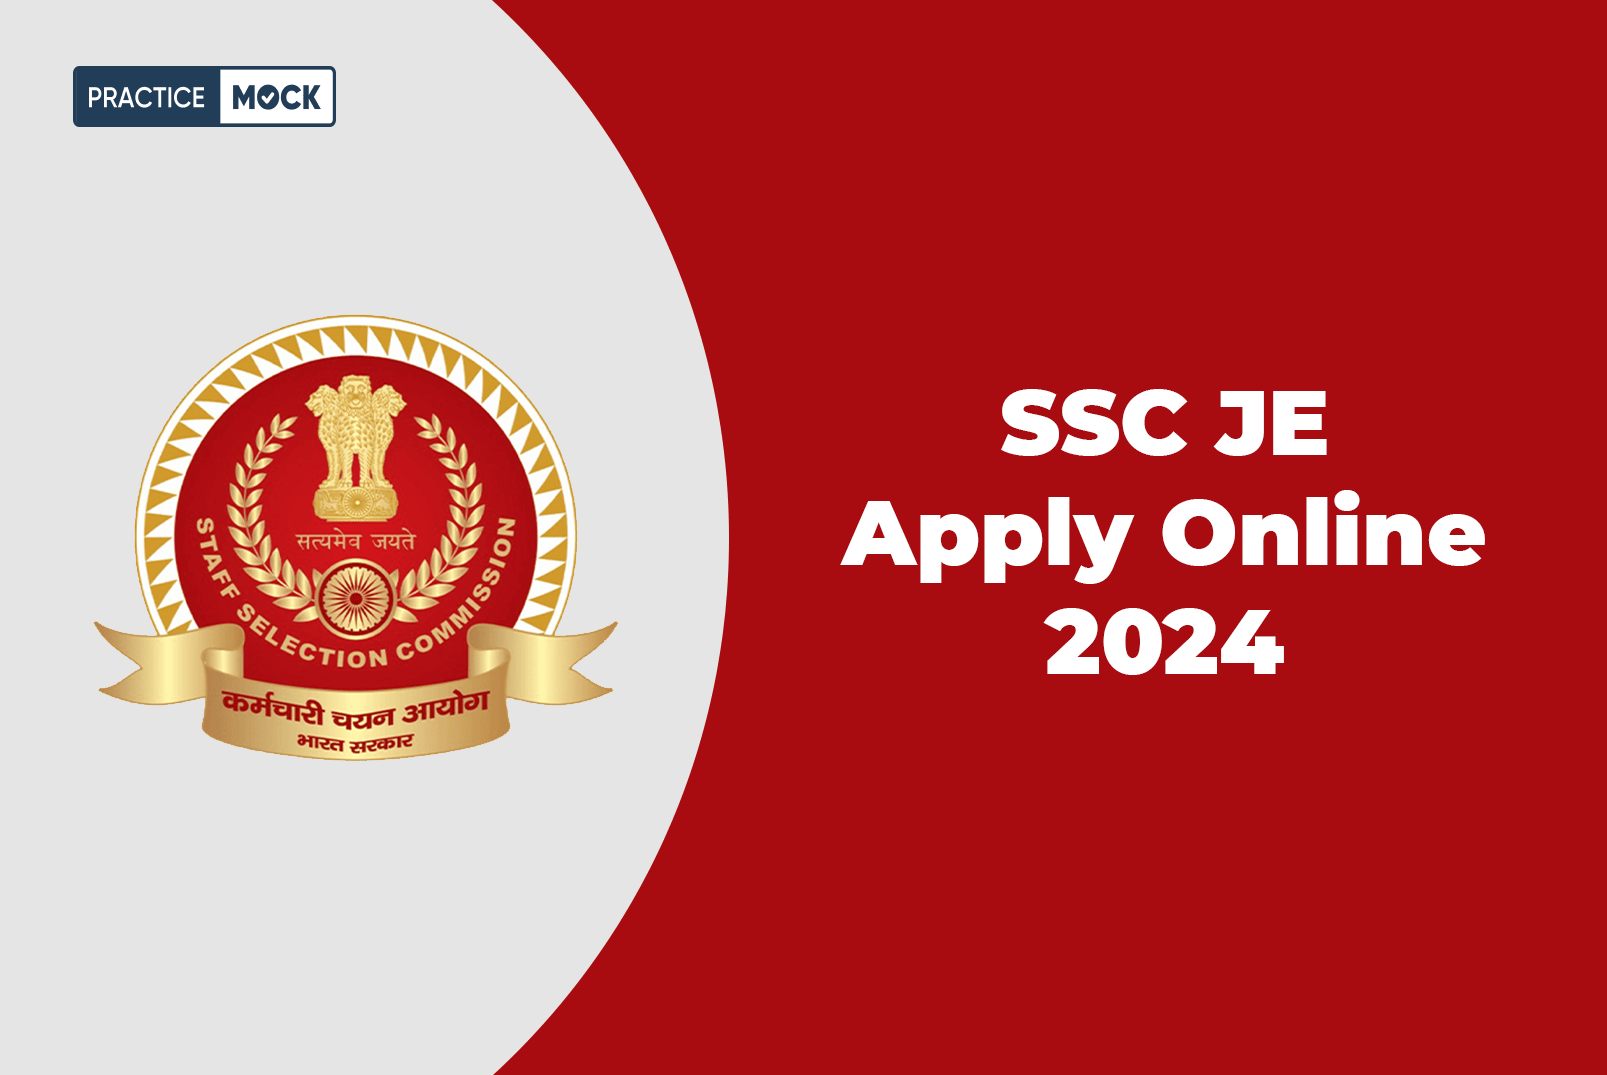 SSC JE Apply Online 2024